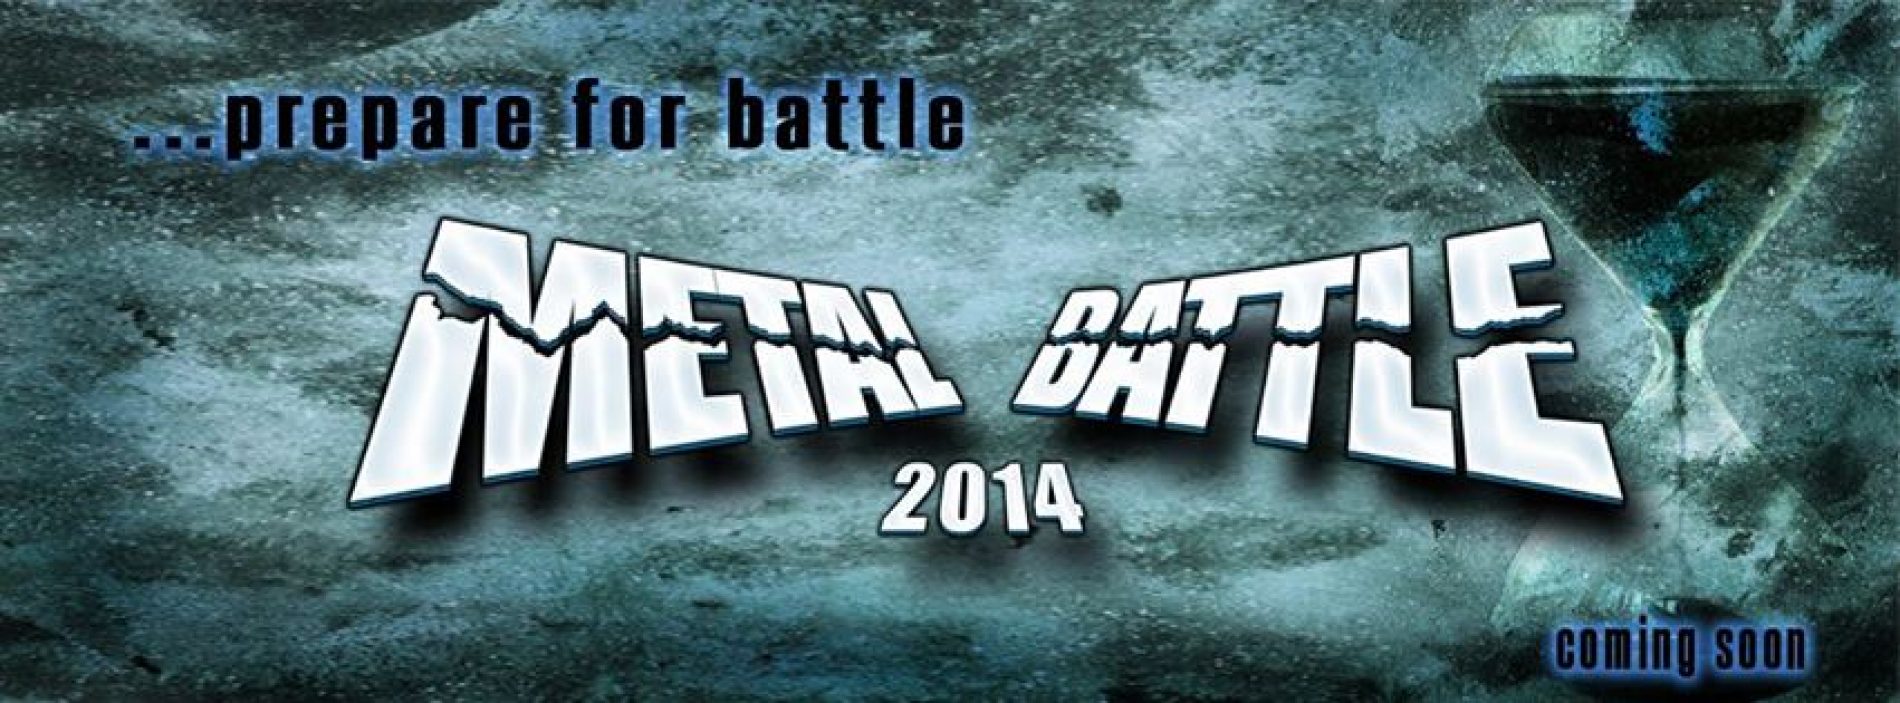 Wacken Metal Battele Romania 2014: Incep inscrierile